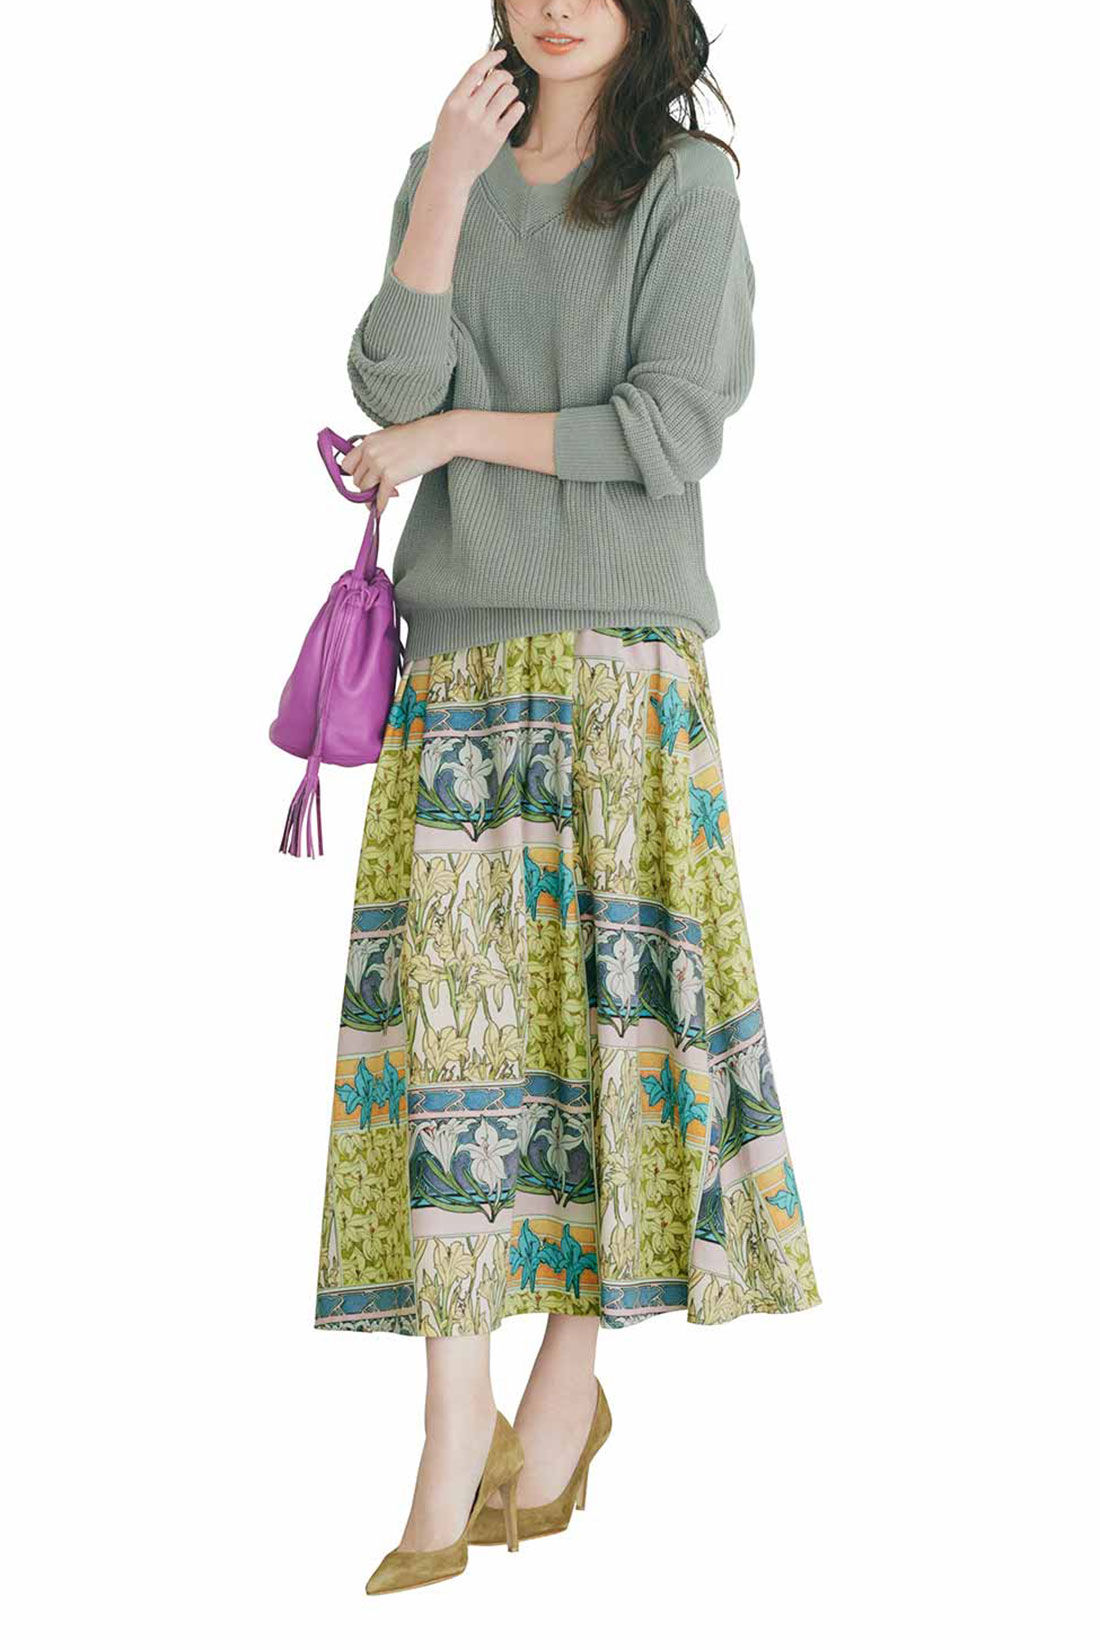 IEDIT|IEDIT[イディット]　優美なミュシャの図案をまとう クラッシックなプリントスカート〈ベージュ〉|※着用イメージです。お届けするカラーとは異なります。